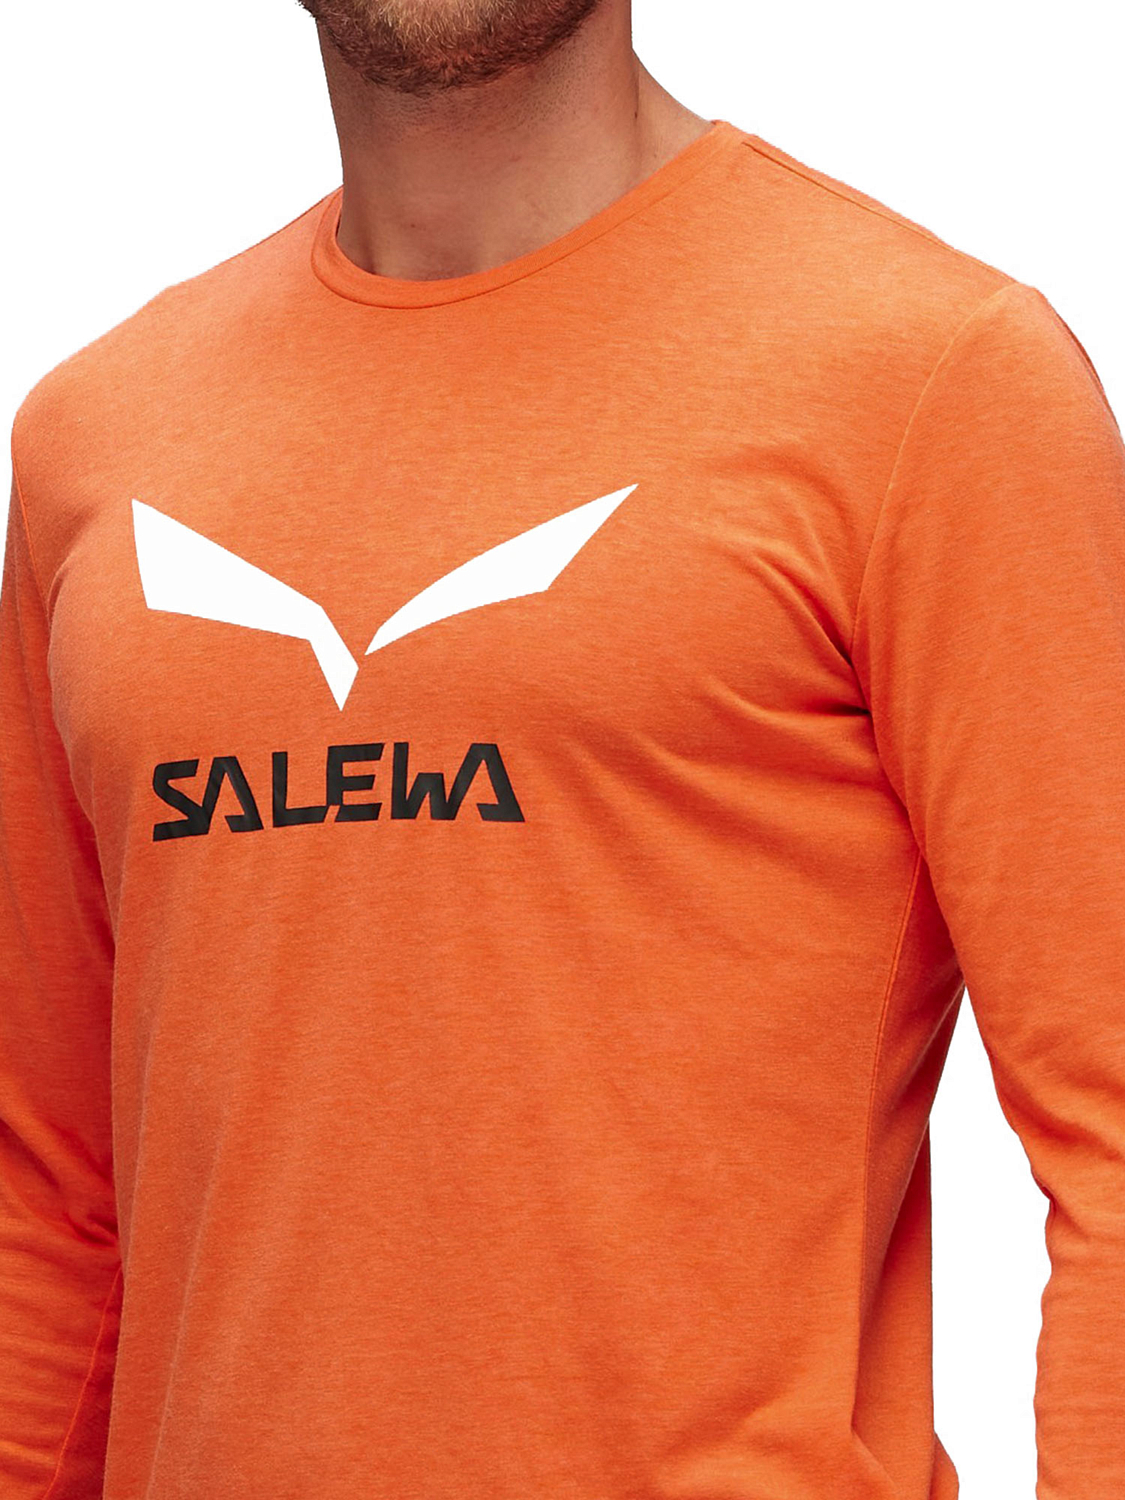 Футболка с длинным рукавом для активного отдыха Salewa Solidlogo Dry Men's L/S Tee Red Orange Melange